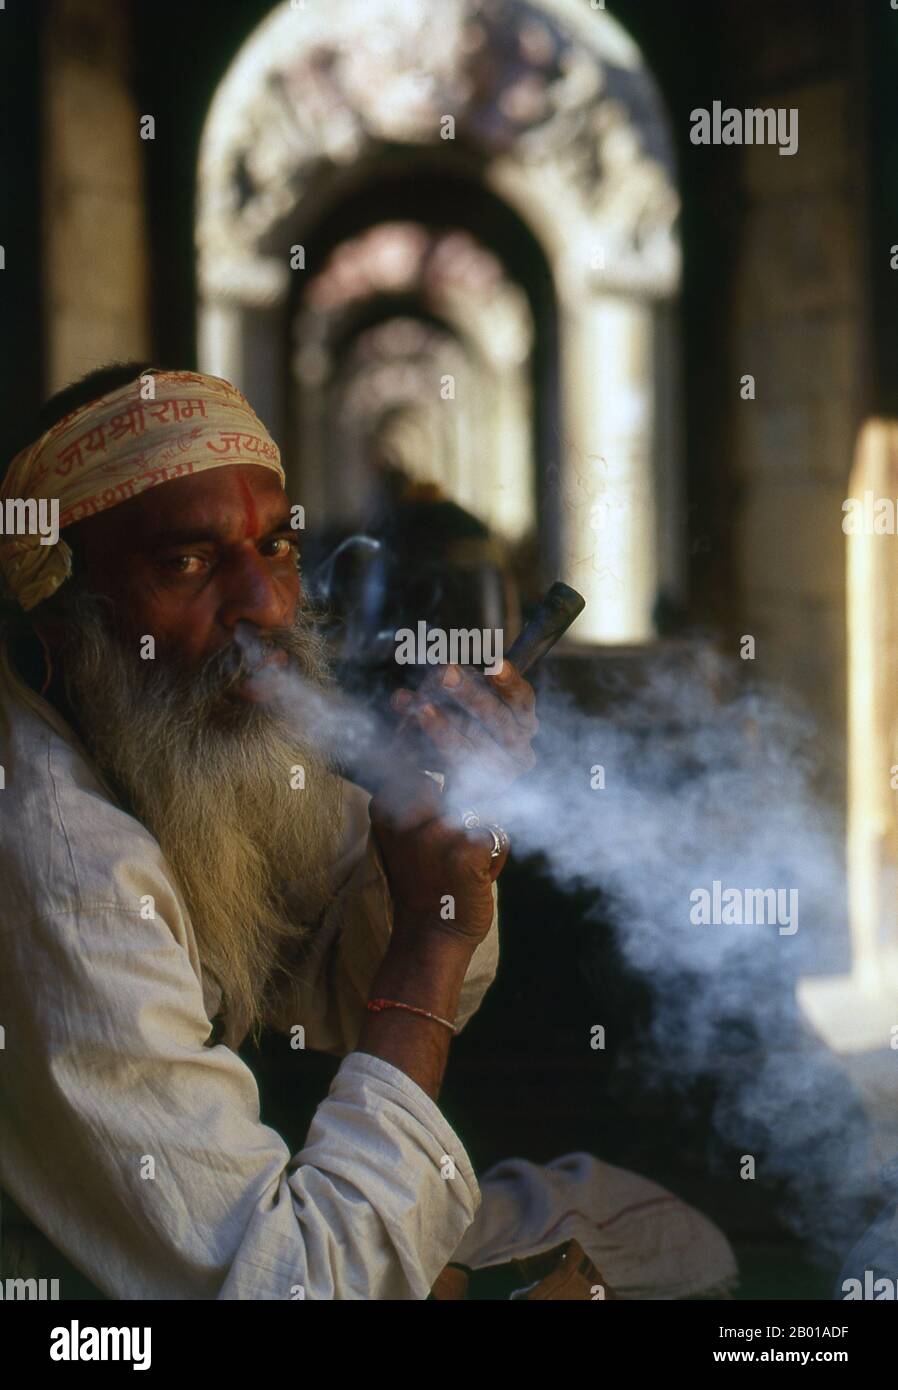 Nepal: Haschisch rauchender Sadhu, Pashupatinath, Kathmandu. Sie sind, verschiedentlich, als Sadhus (Heilige oder 'gute'), Yogis (asketische Praktizierende) bekannt, Fakiren (asketischer Sucher nach der Wahrheit) und Sannyasine (wandernde Bettelmönchen und Asketen). Sie sind die asketischen – und oft exzentrischen – Praktizierenden einer strengen Form des Hinduismus. Geschworen, irdische Wünsche abzuwerfen, entscheiden sich manche dafür, als Anchoriten in der Wildnis zu leben. Andere sind weniger pensioniert, vor allem in den Städten und Tempeln des nepalesischen Kathmandu-Tals. Stockfoto